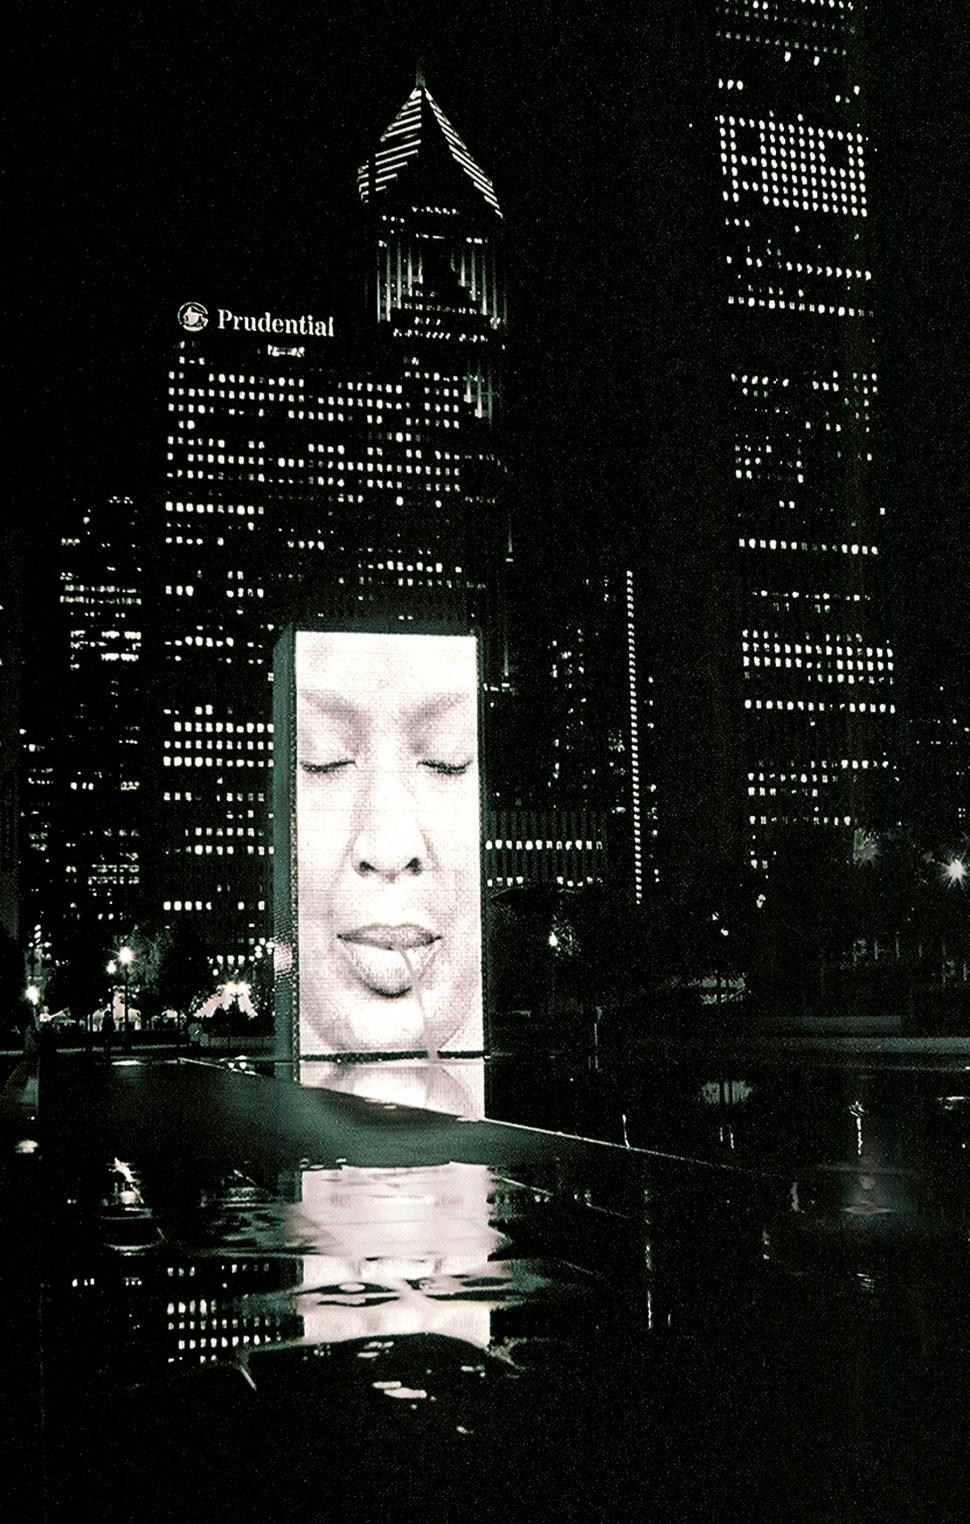 Free Image of Millennium Park, Chicago 